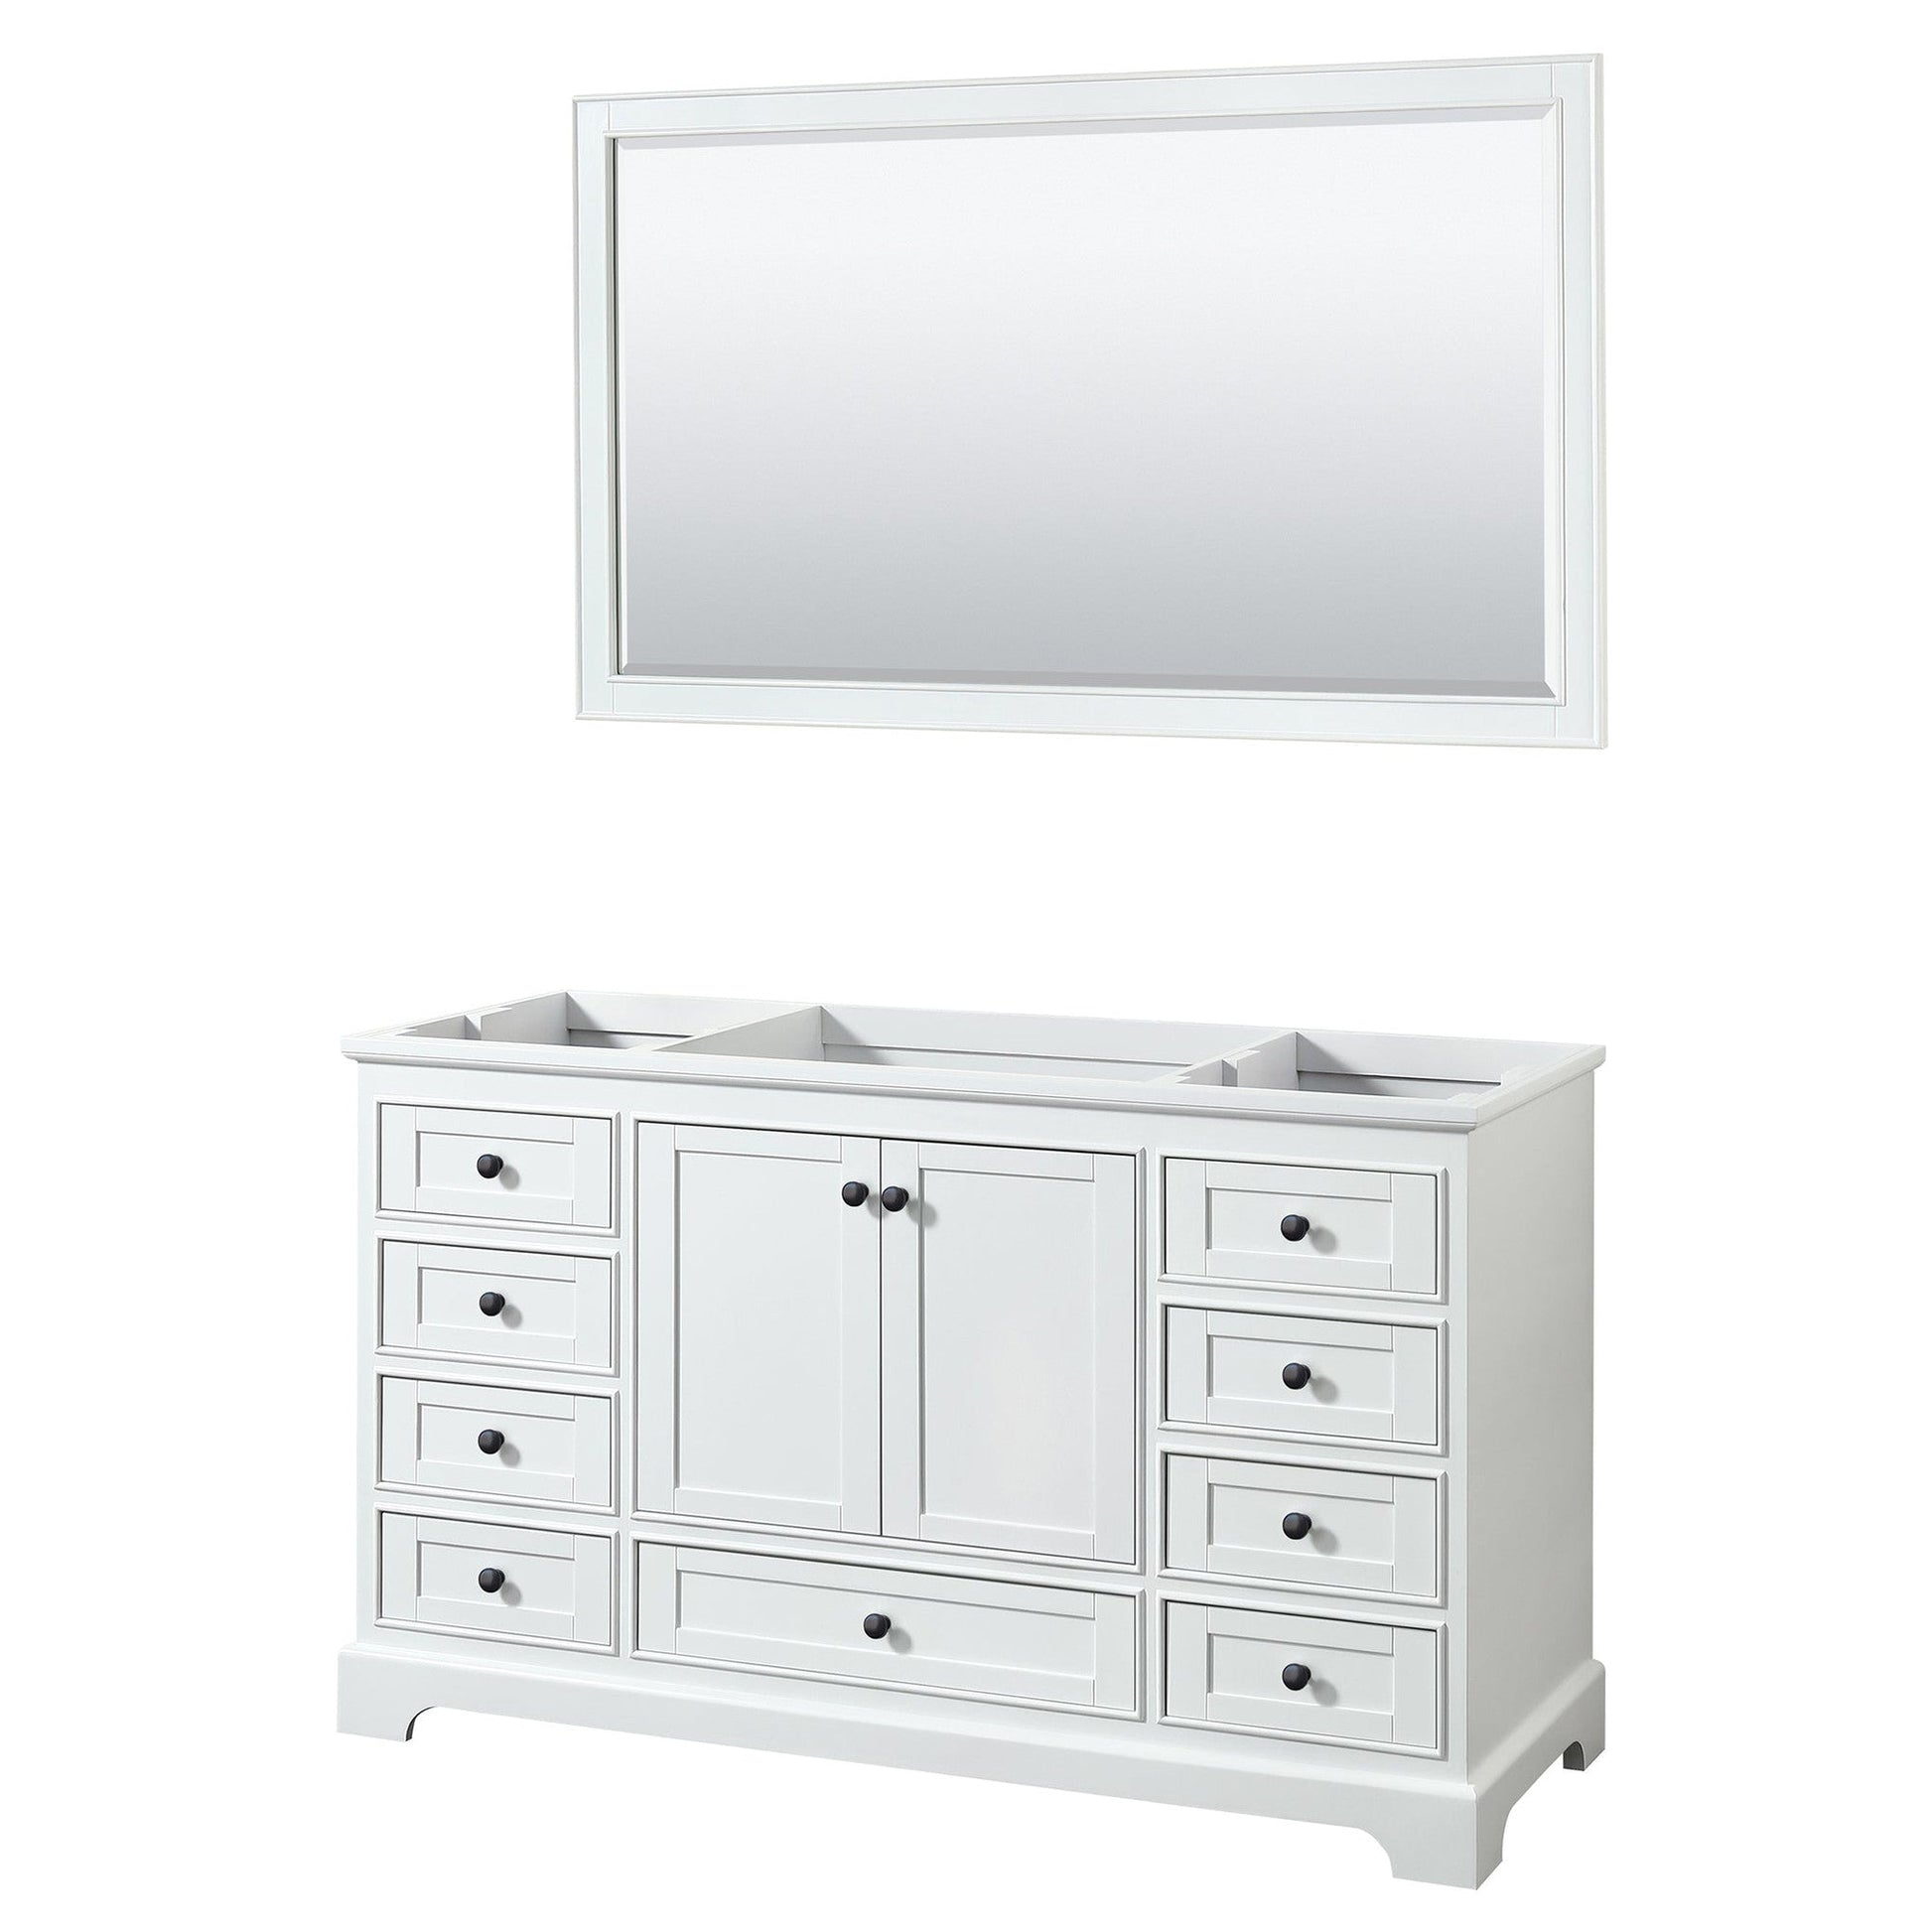 Deborah 60" Single Bathroom Vanity in White, No Countertop, No Sink, Matte Black Trim, 58" Mirror